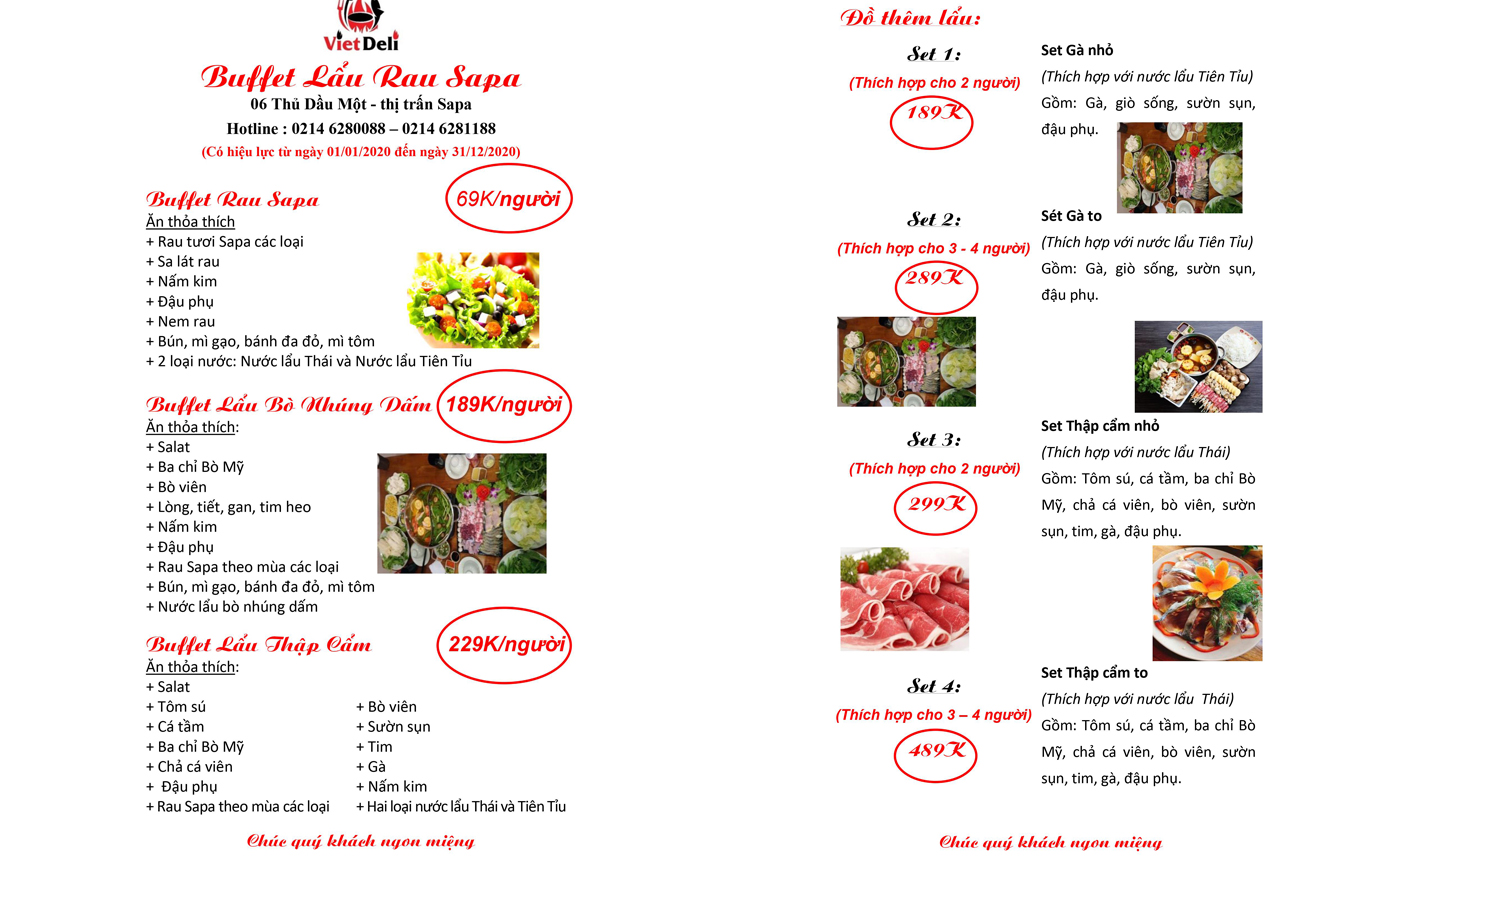 Viet Deli Sapa - Nhà hàng buffet lẩu rau và đặc sản núi rừng 6